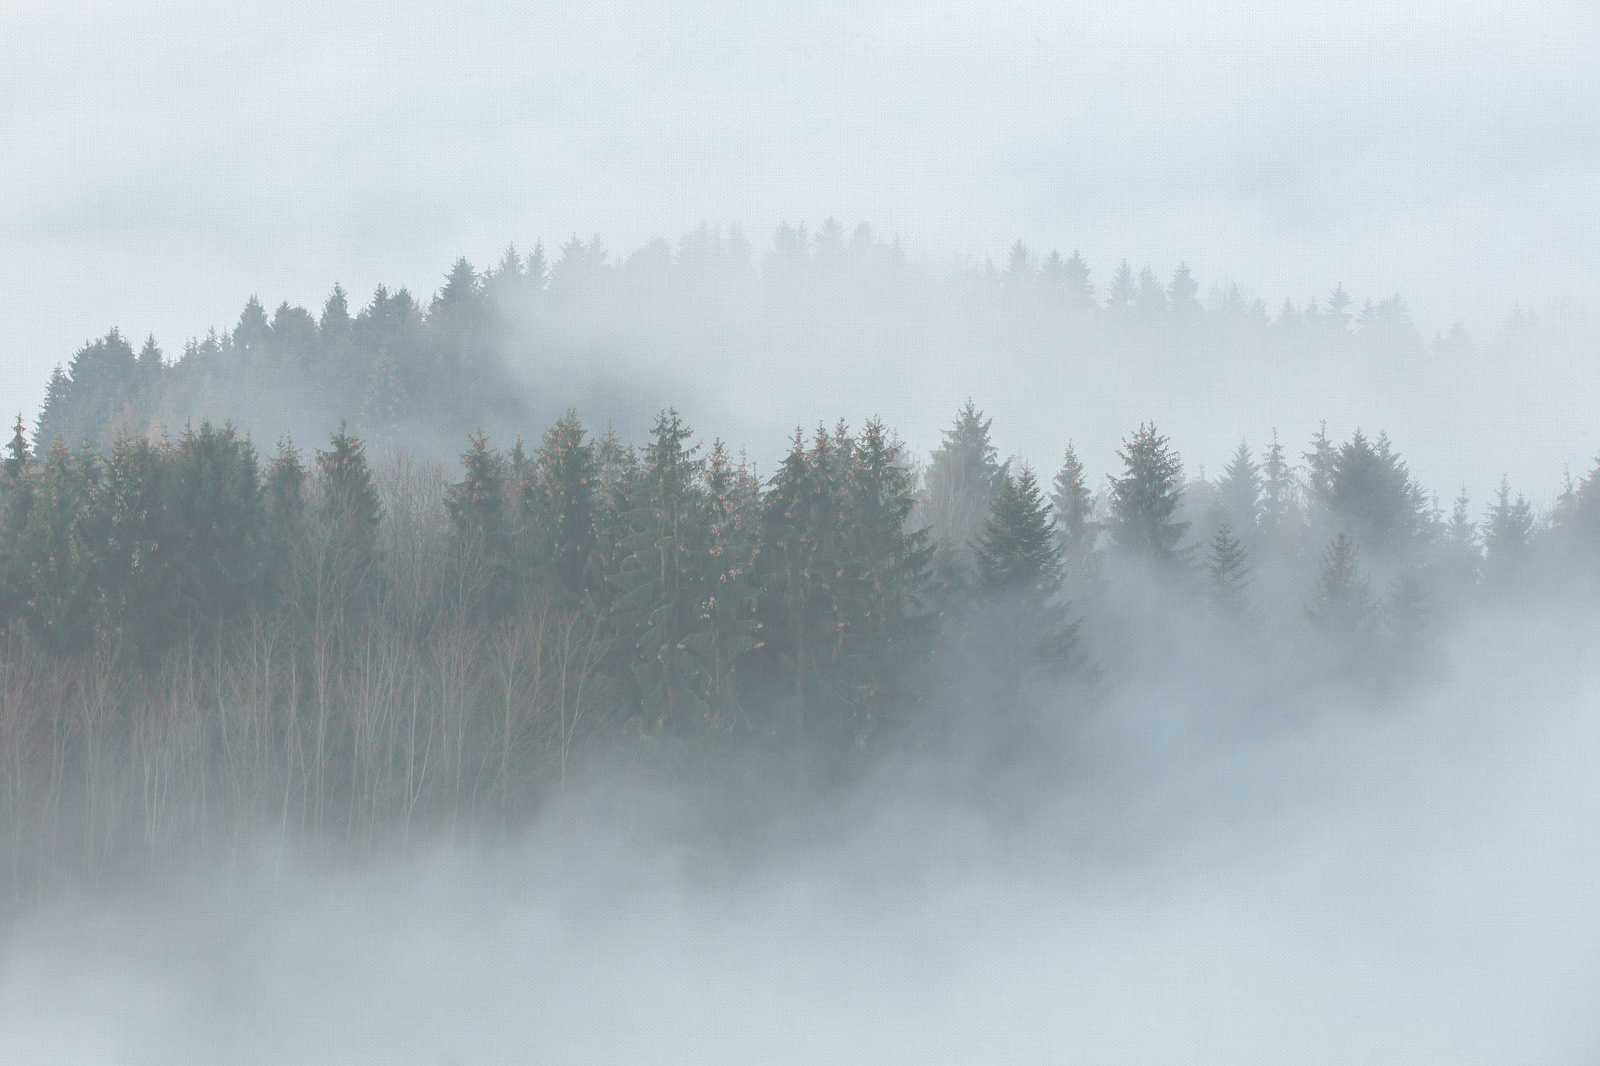             Toile avec forêt mystérieuse dans le brouillard - 0,90 m x 0,60 m
        